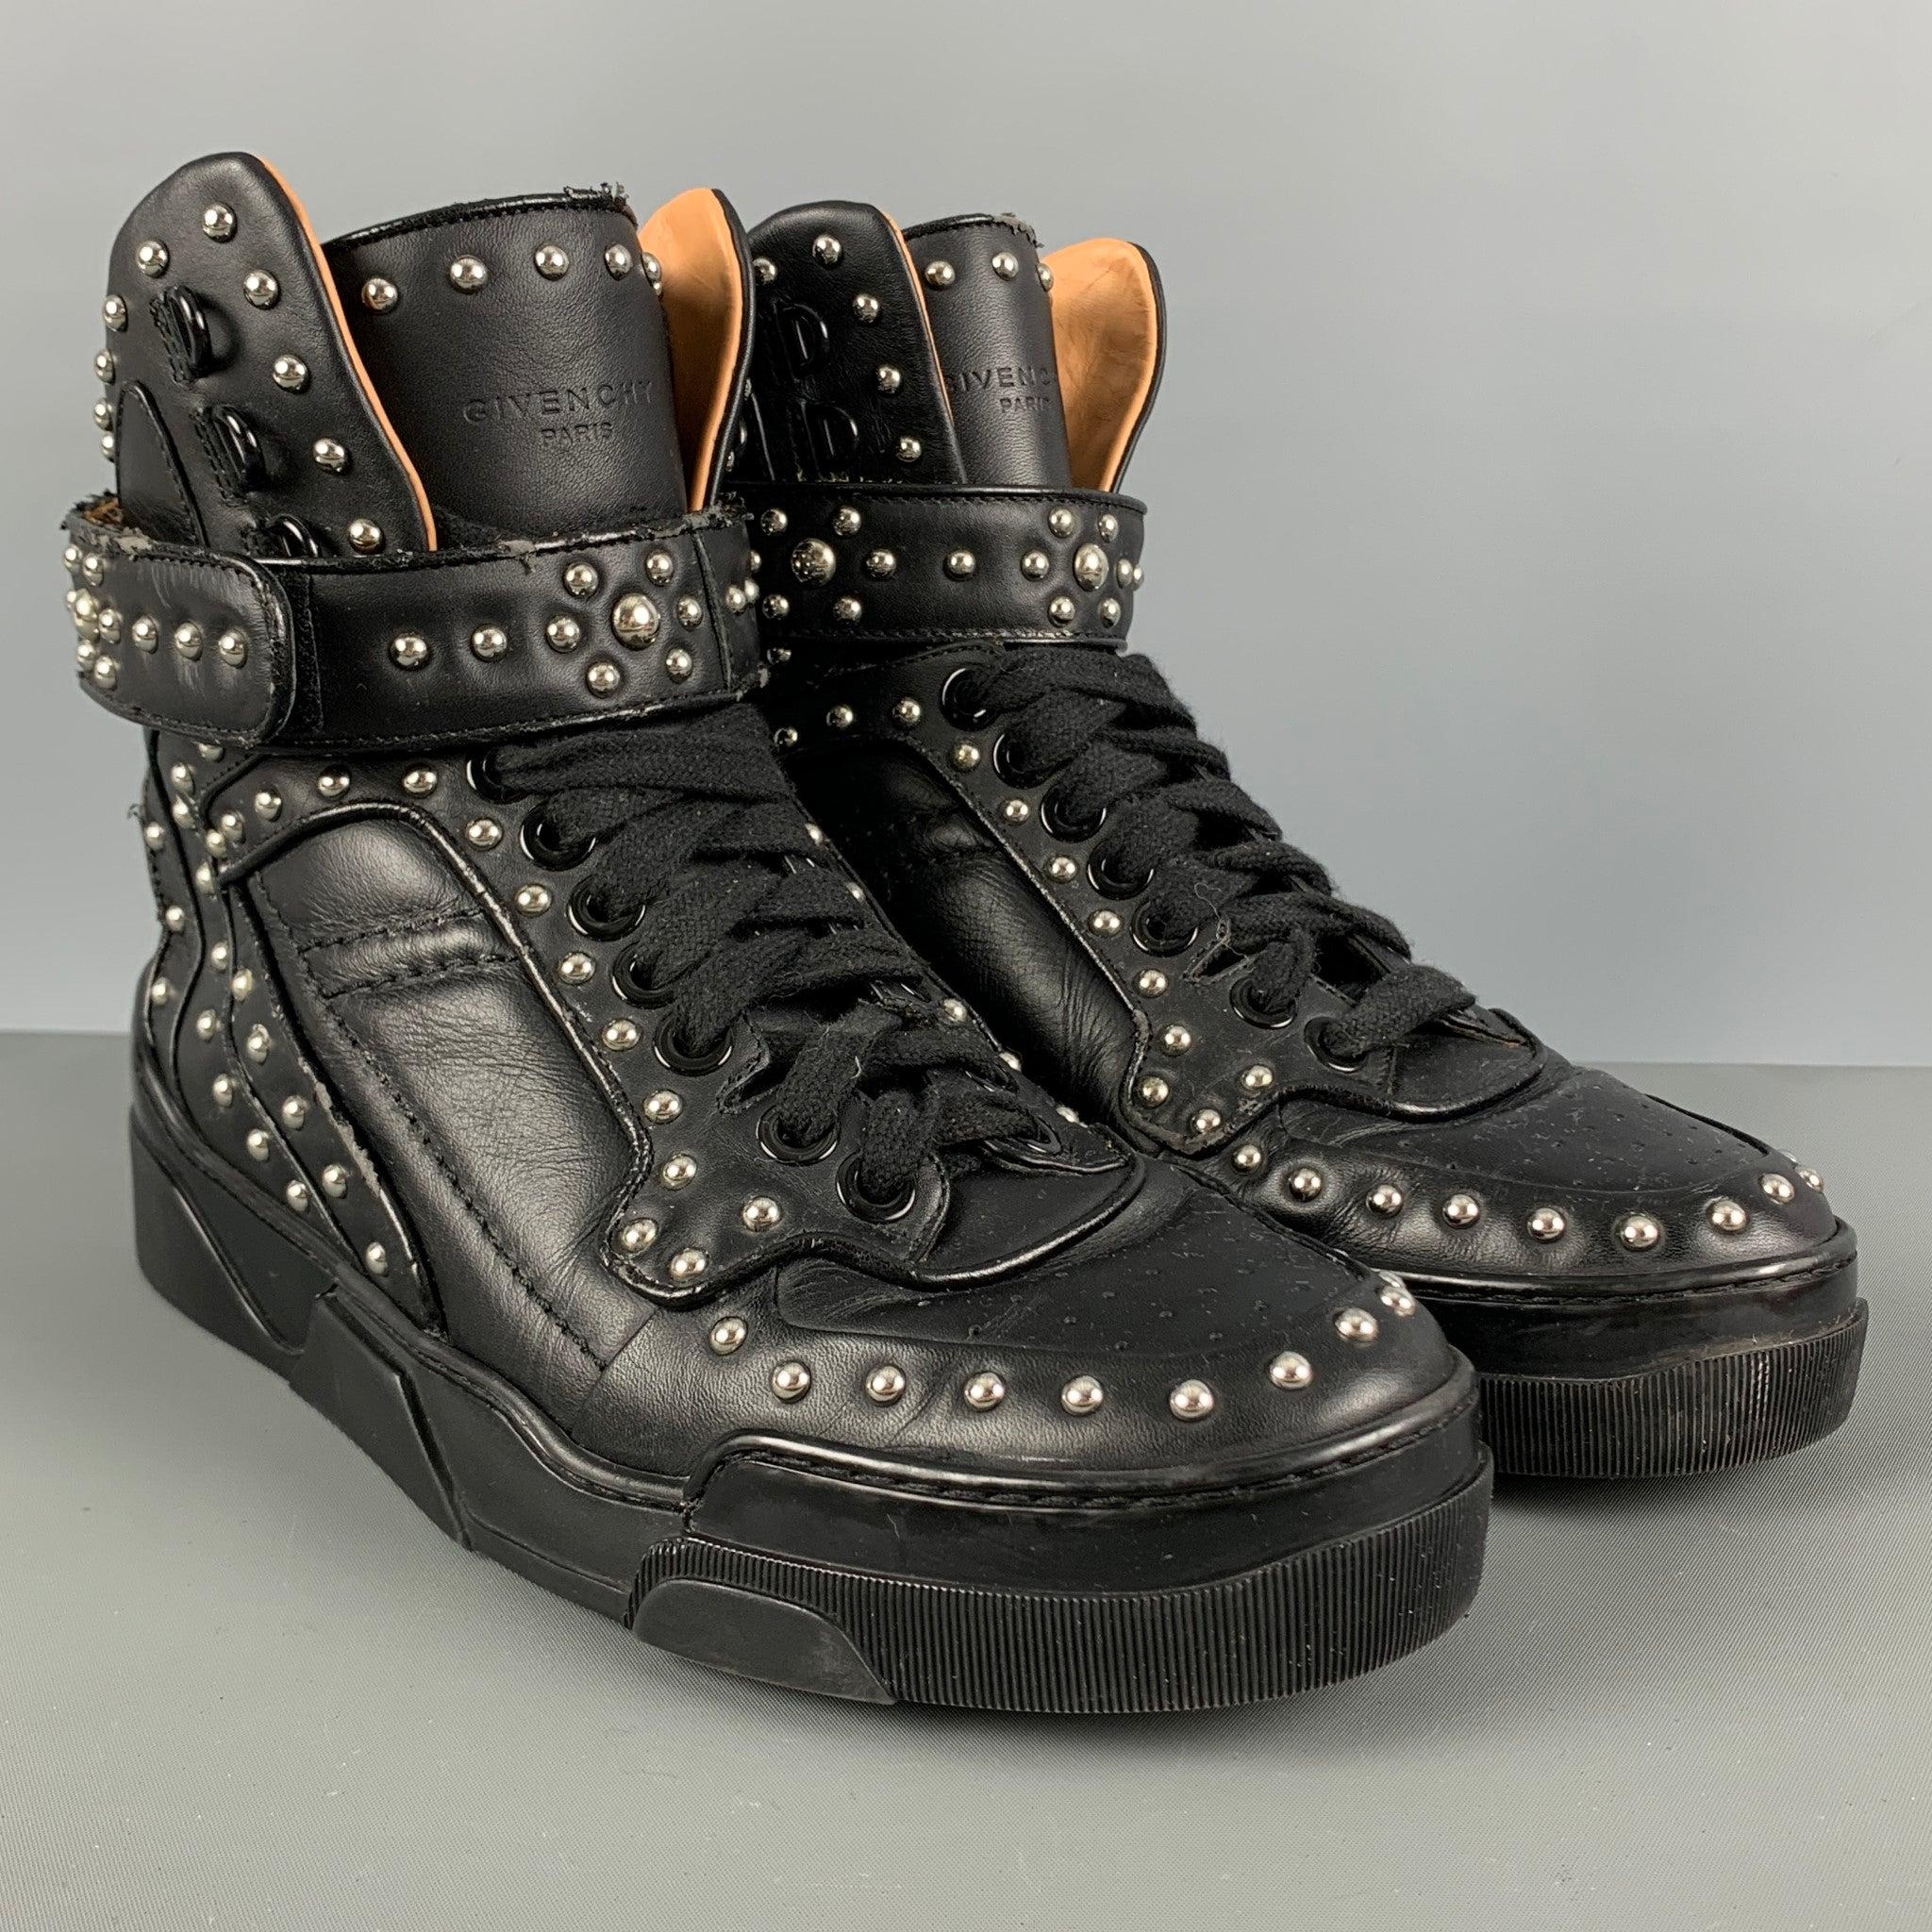 GIVENCHY High-Top-Sneakers aus schwarzem Leder mit silbernen Nieten, Gummisohle und Schnürsenkeln. Sehr guter gebrauchter Zustand. Leichte Abnutzung. So wie es ist. 

Markiert:   42 

Abmessungen: 
  Länge: 11,5 Zoll Breite: 4,25 Zoll Höhe: 8 Zoll 
